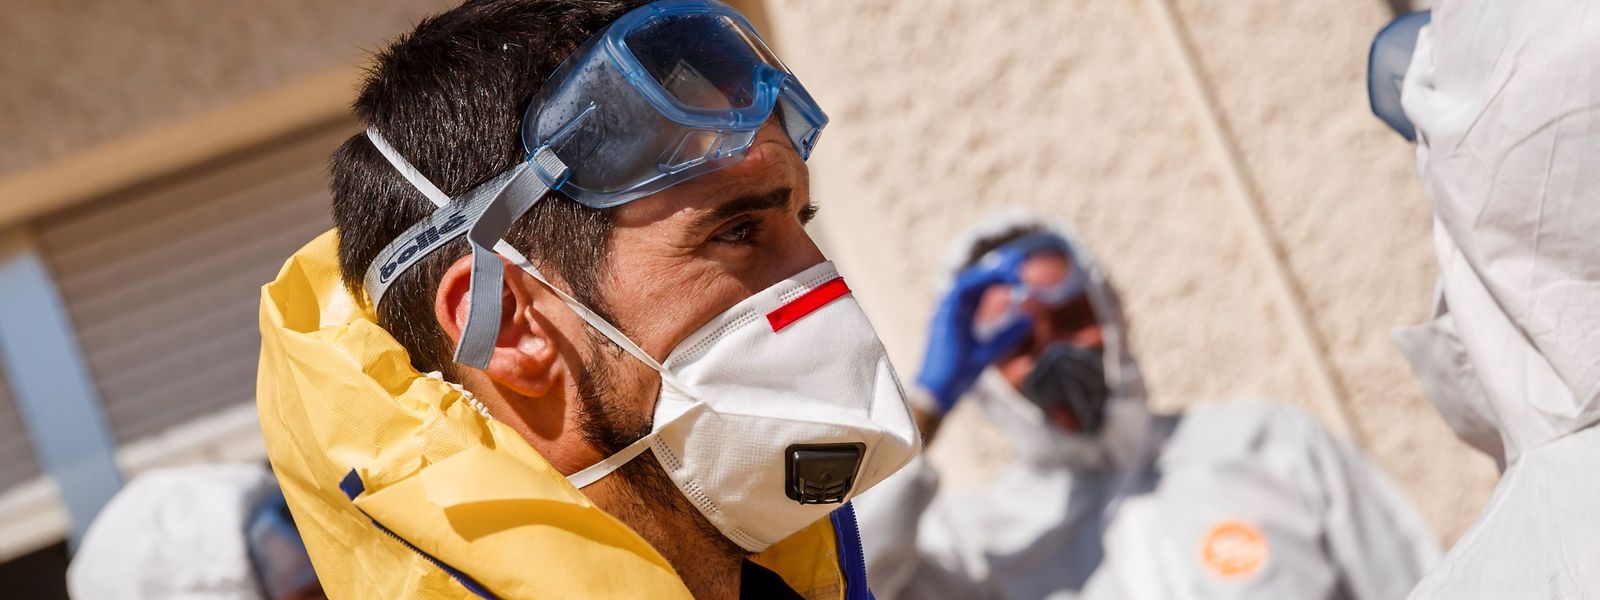 In Spanien kommen Soldaten der Nothilfeeinheit UME bei Desinfektionsarbeiten in Pflegeheimen zum Einsatz.